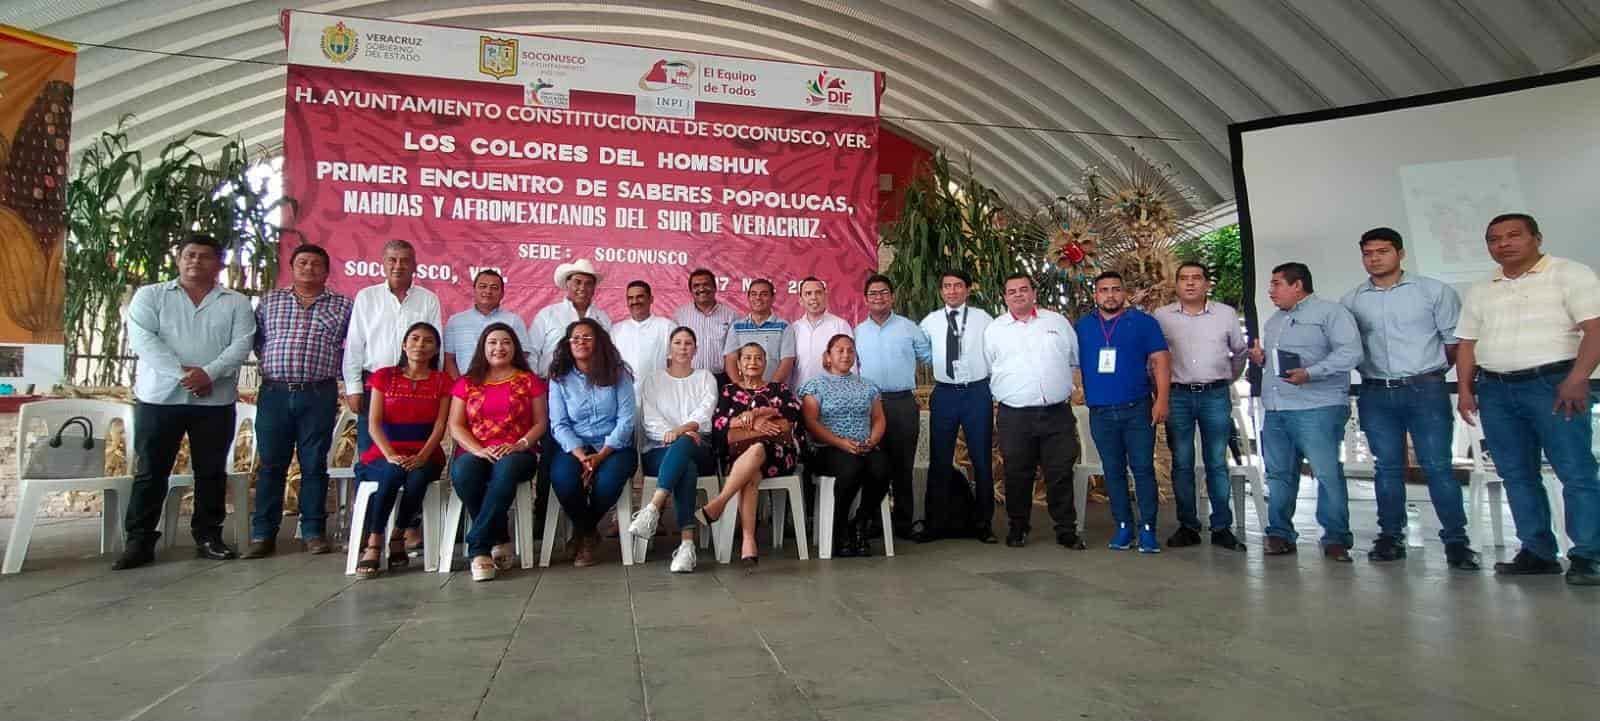 Soconusco sede de encuentro de saberes popolucas, nahuas y afromexicanos del sur de Veracruz (+Video)